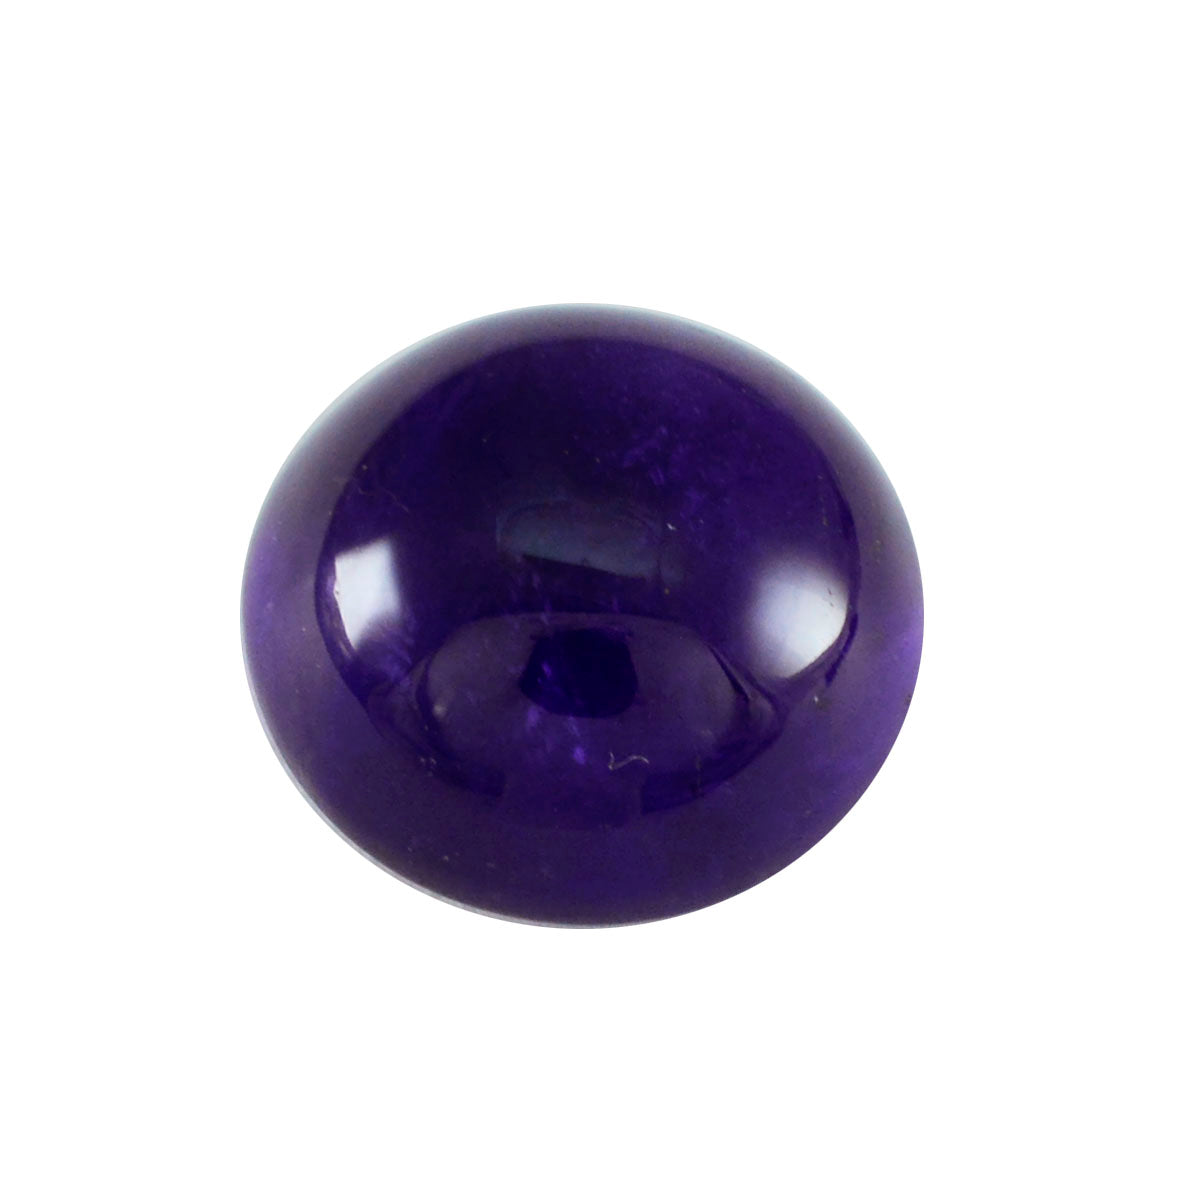 Riyogems 1 Stück lila Amethyst-Cabochon, 13 x 13 mm, runde Form, A+1-Qualität, lose Edelsteine